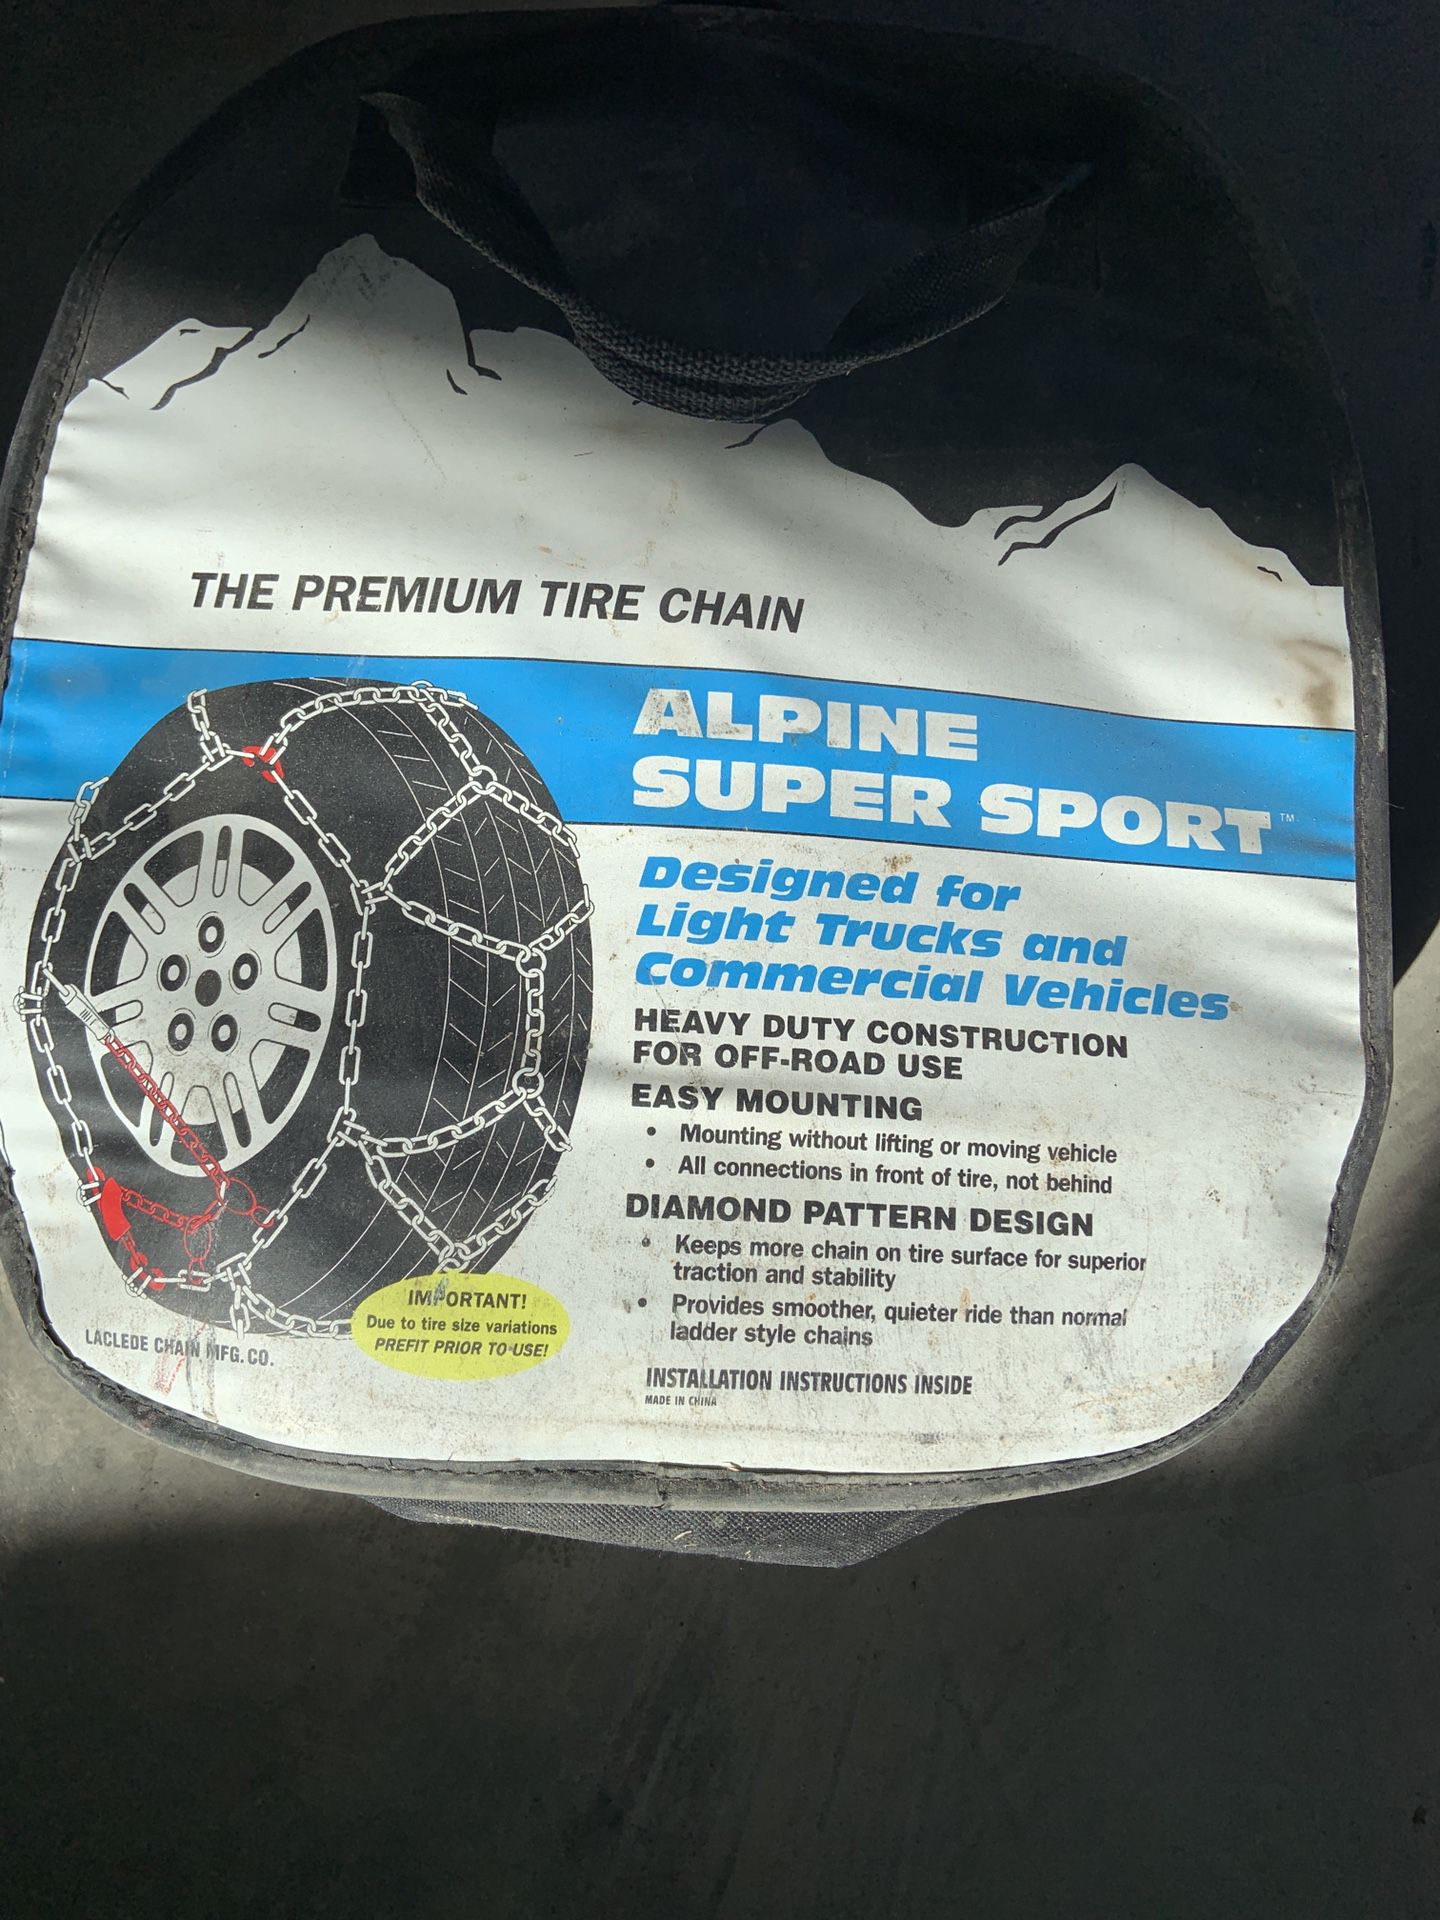 Alpine super sport chains